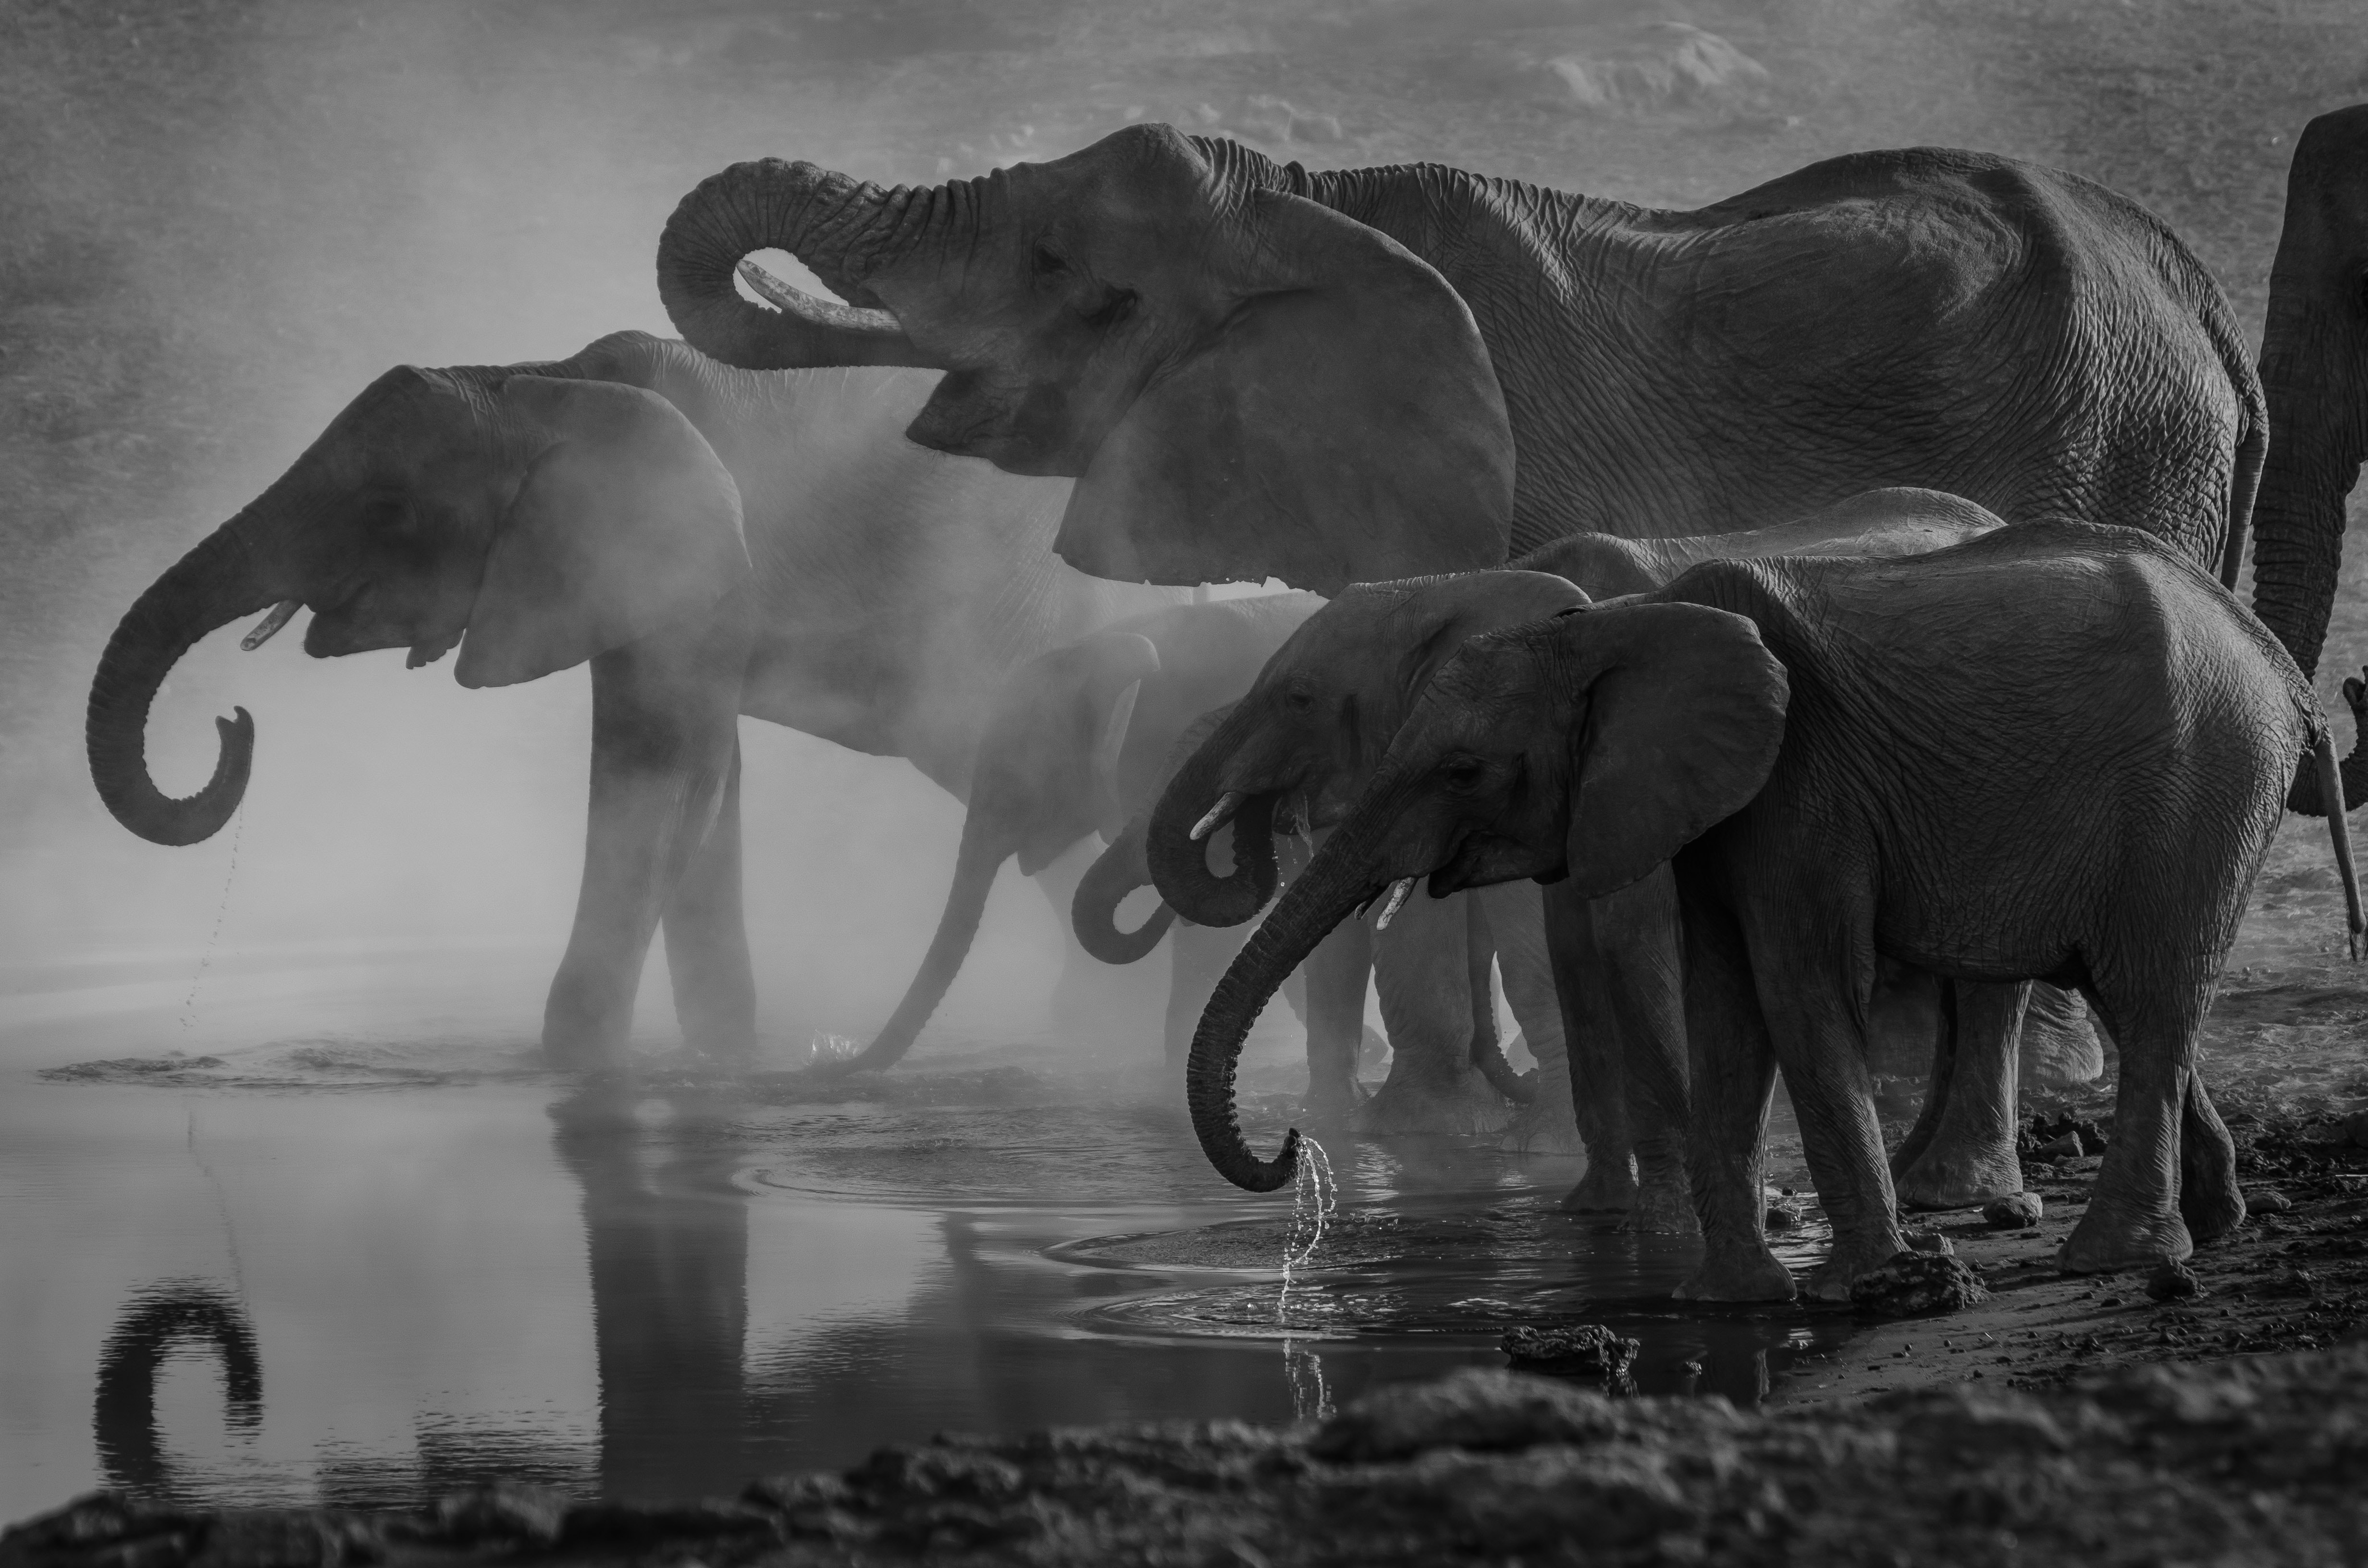 elephants by a lake